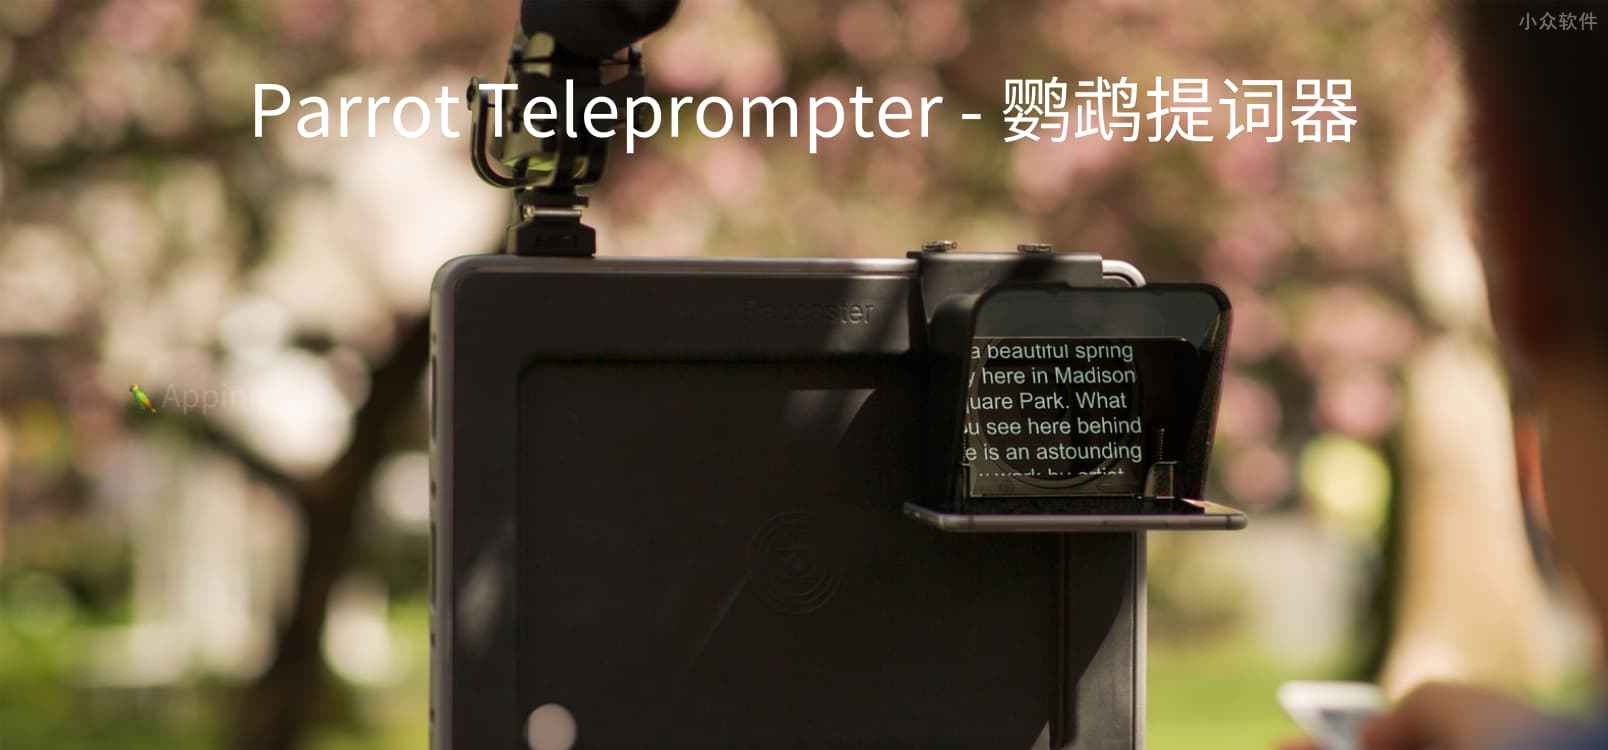 Parrot Teleprompter - 适合于拍摄视频的「提词器」[iPhone/iPad] 1